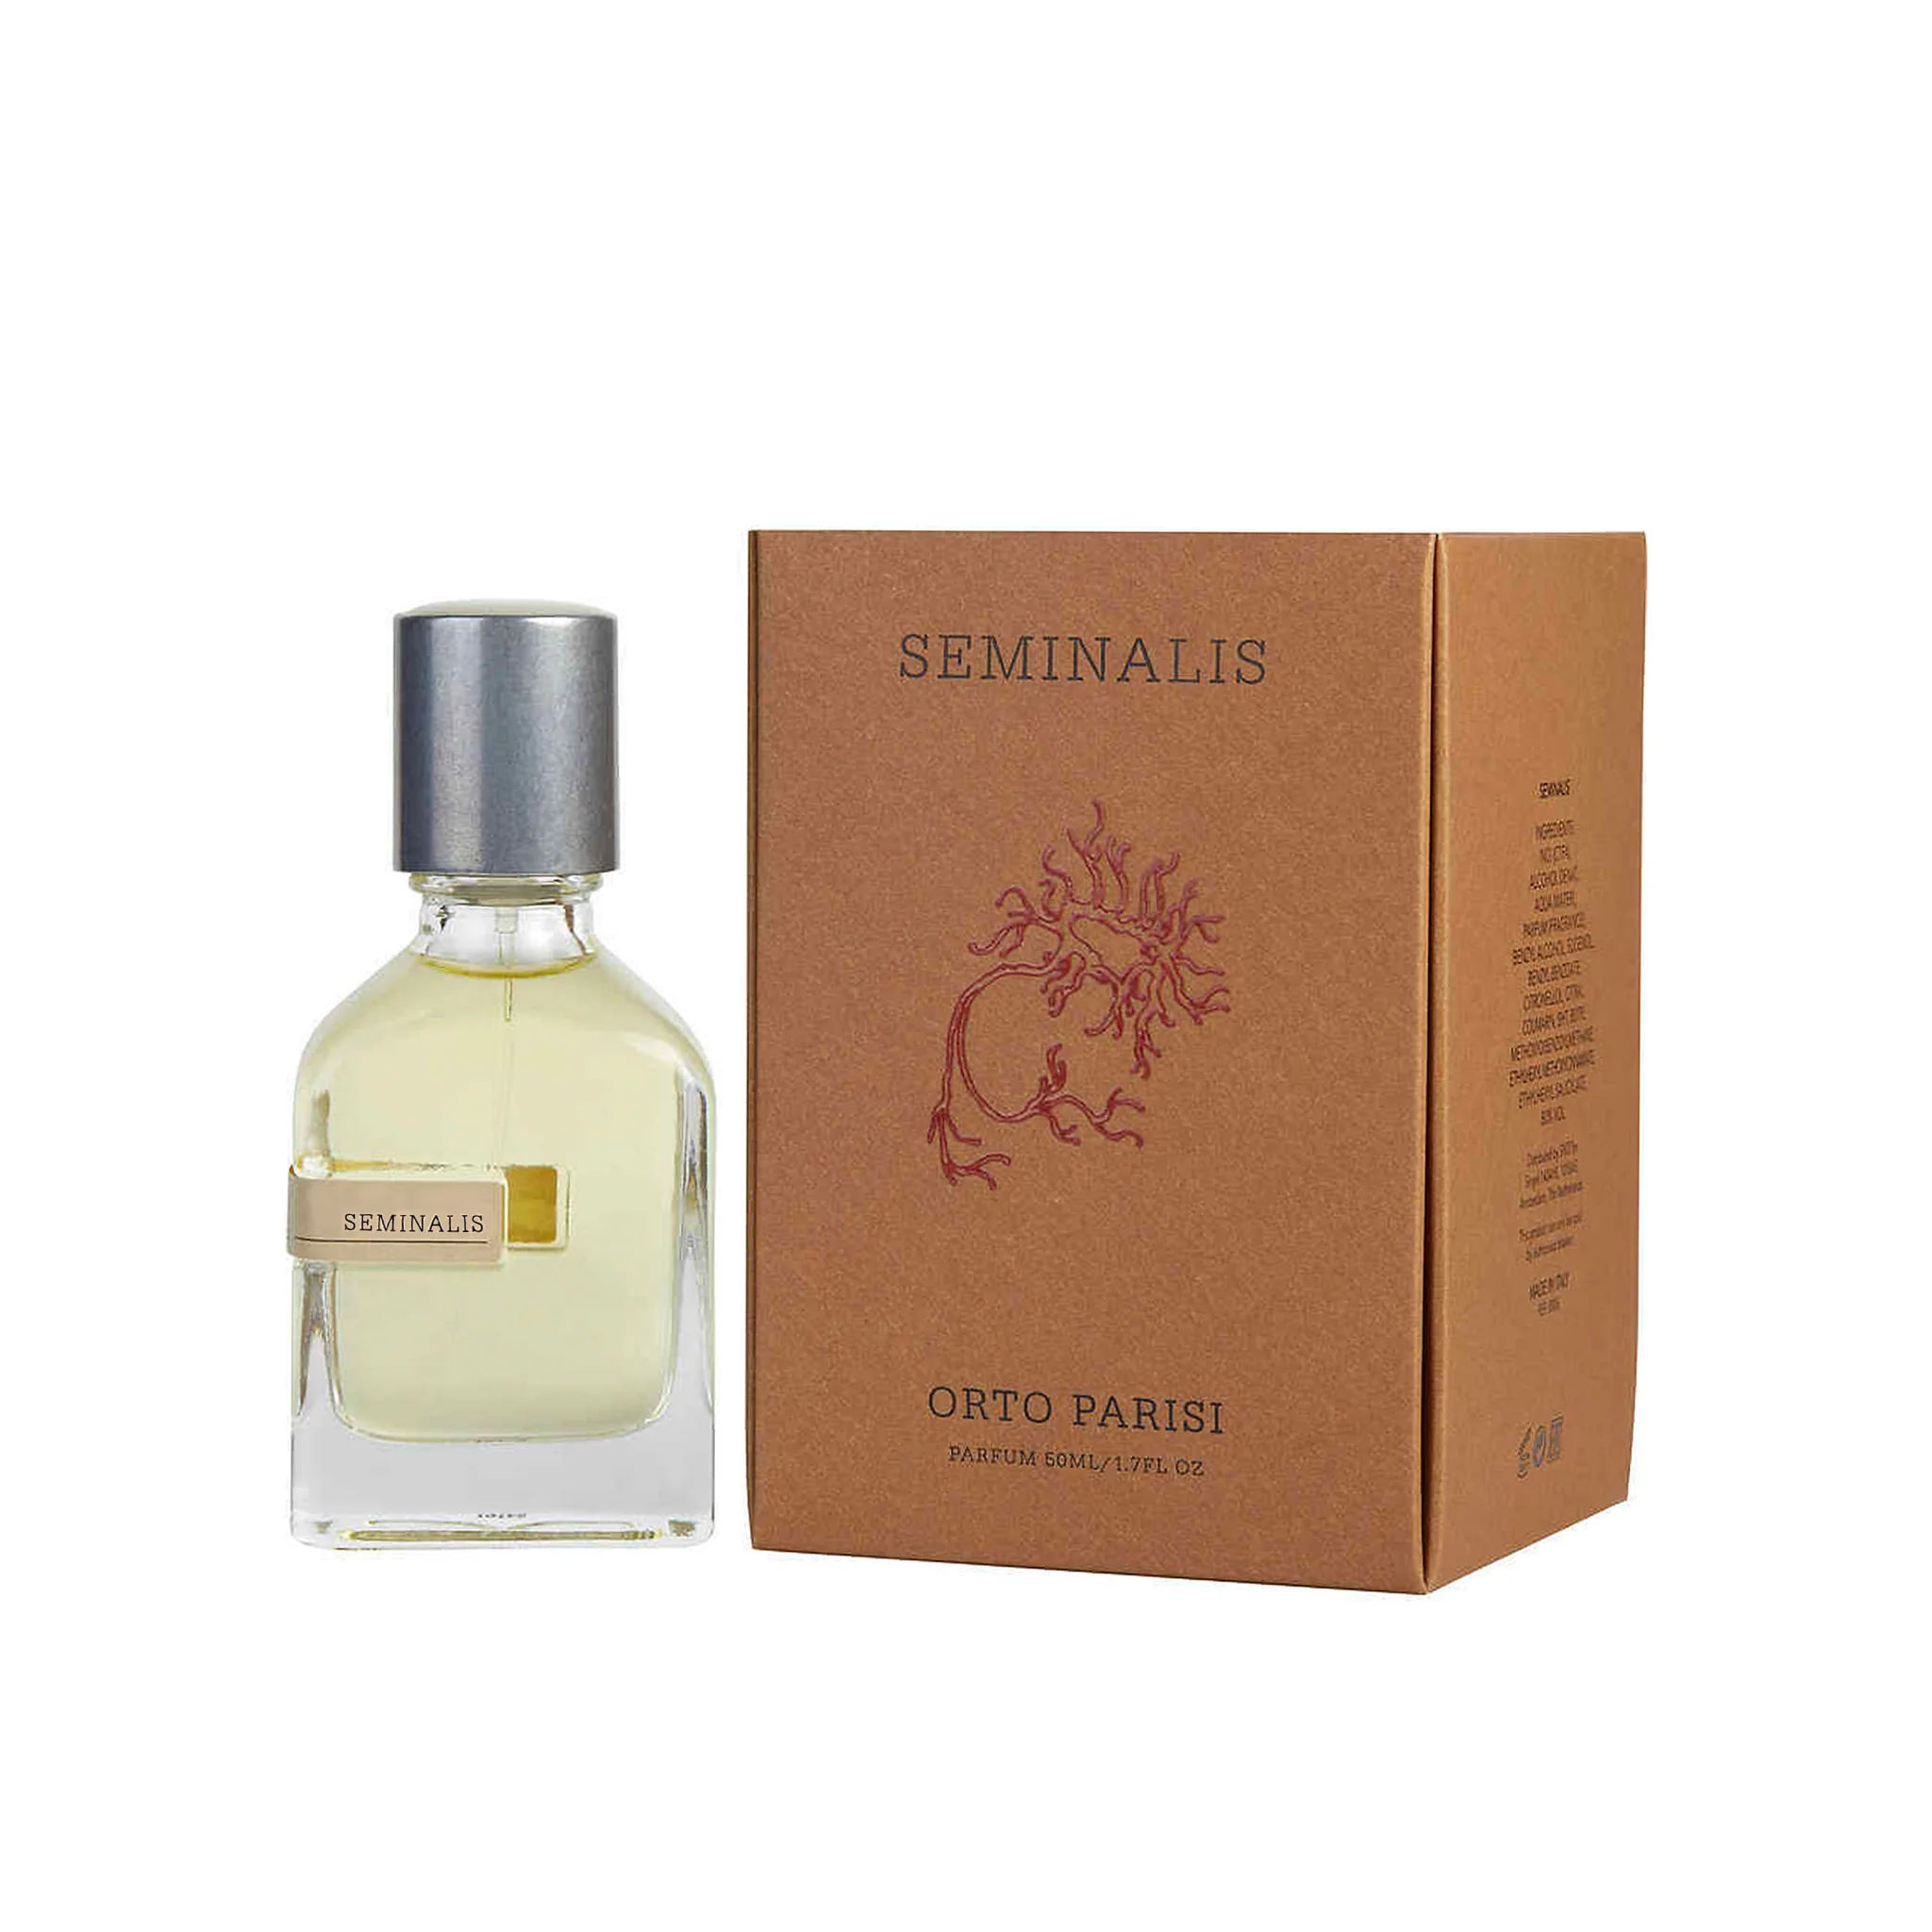 Image of Orto Parisi Seminalis - Parfum 50 ml